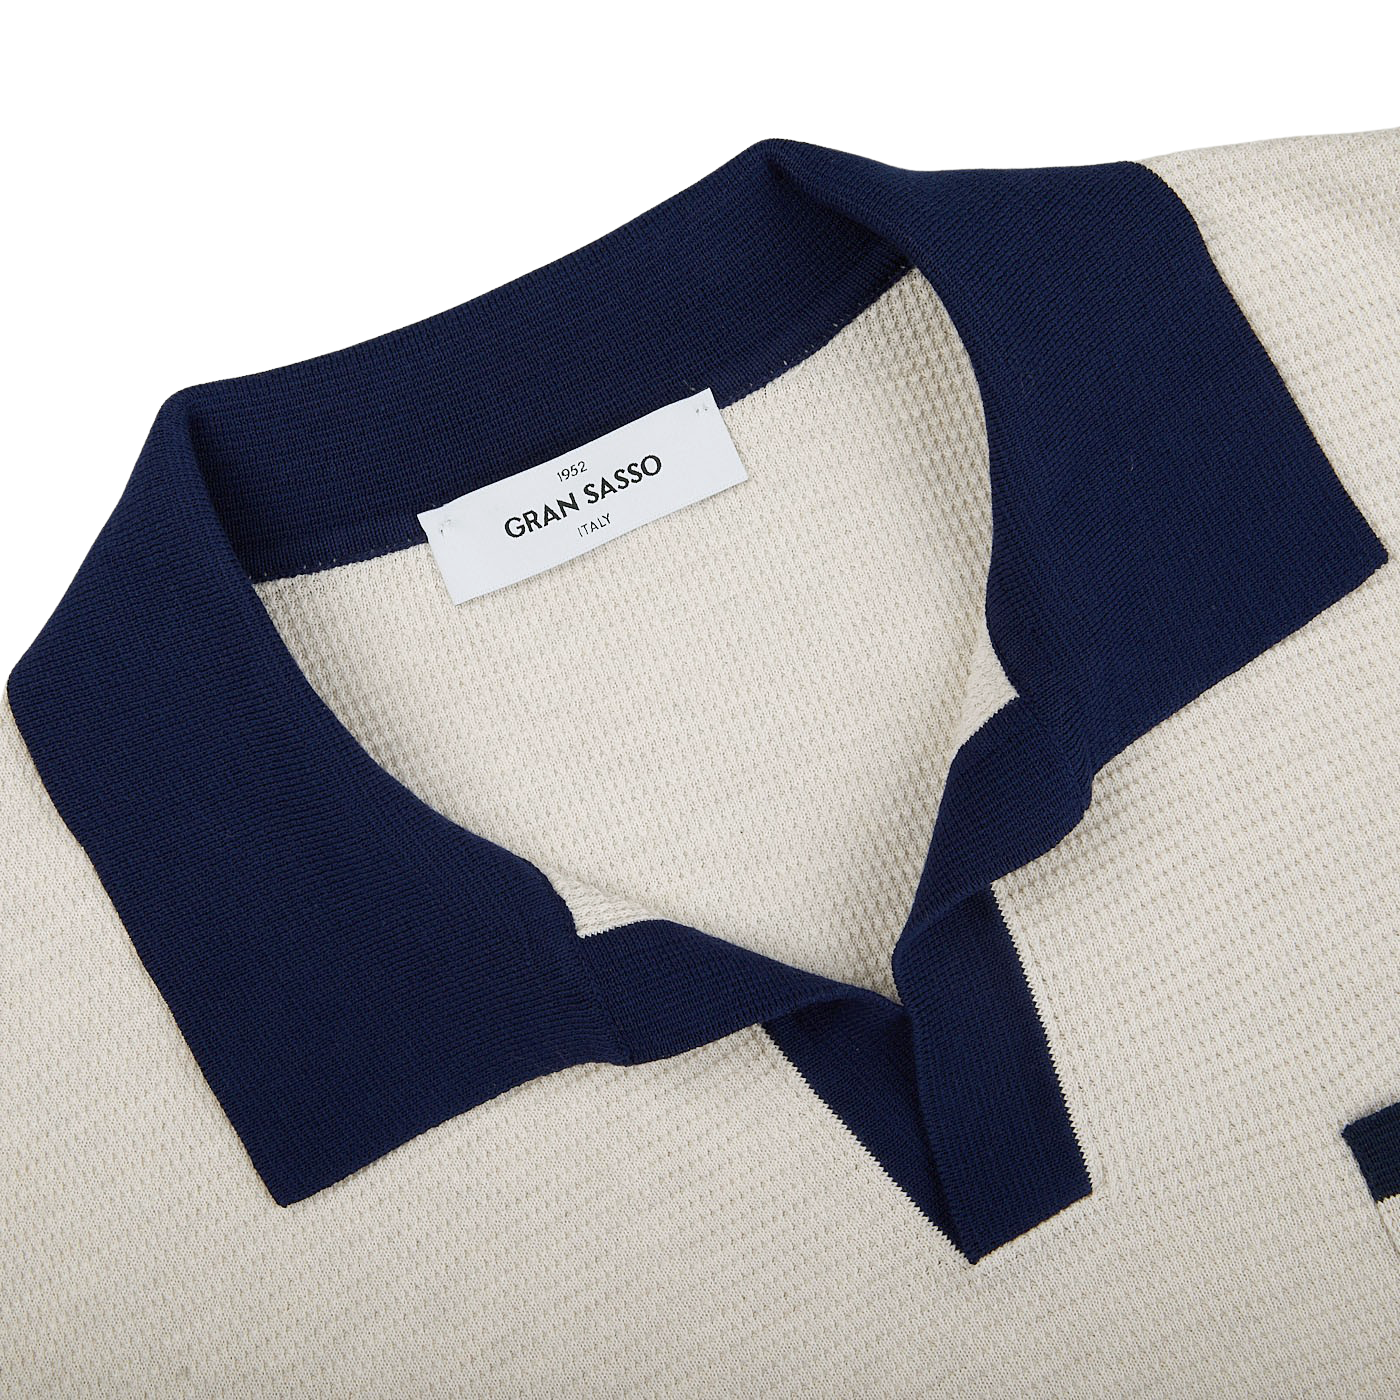 A Gran Sasso Cream Fresh Cotton Contrast Collar Polo Shirt with a navy collar made of cotton.